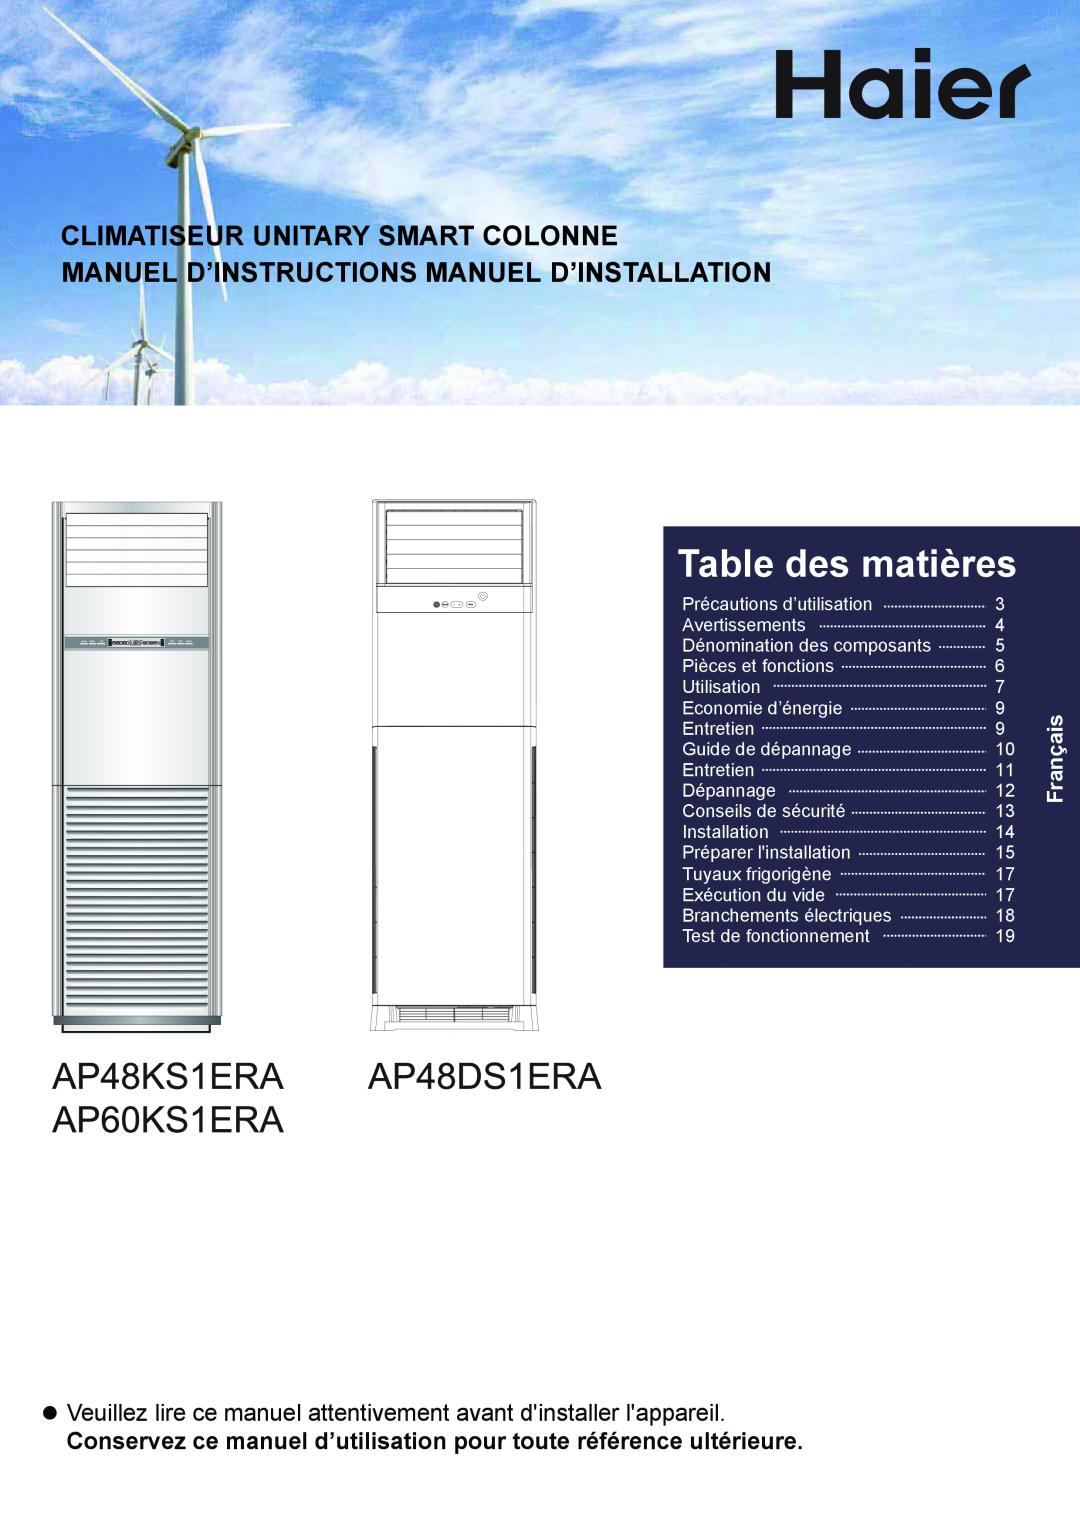 Haier AP48KS1ERA Table des matières, Climatiseur Unitary Smart Colonne, Manuel D’Instructions Manuel D’Installation 